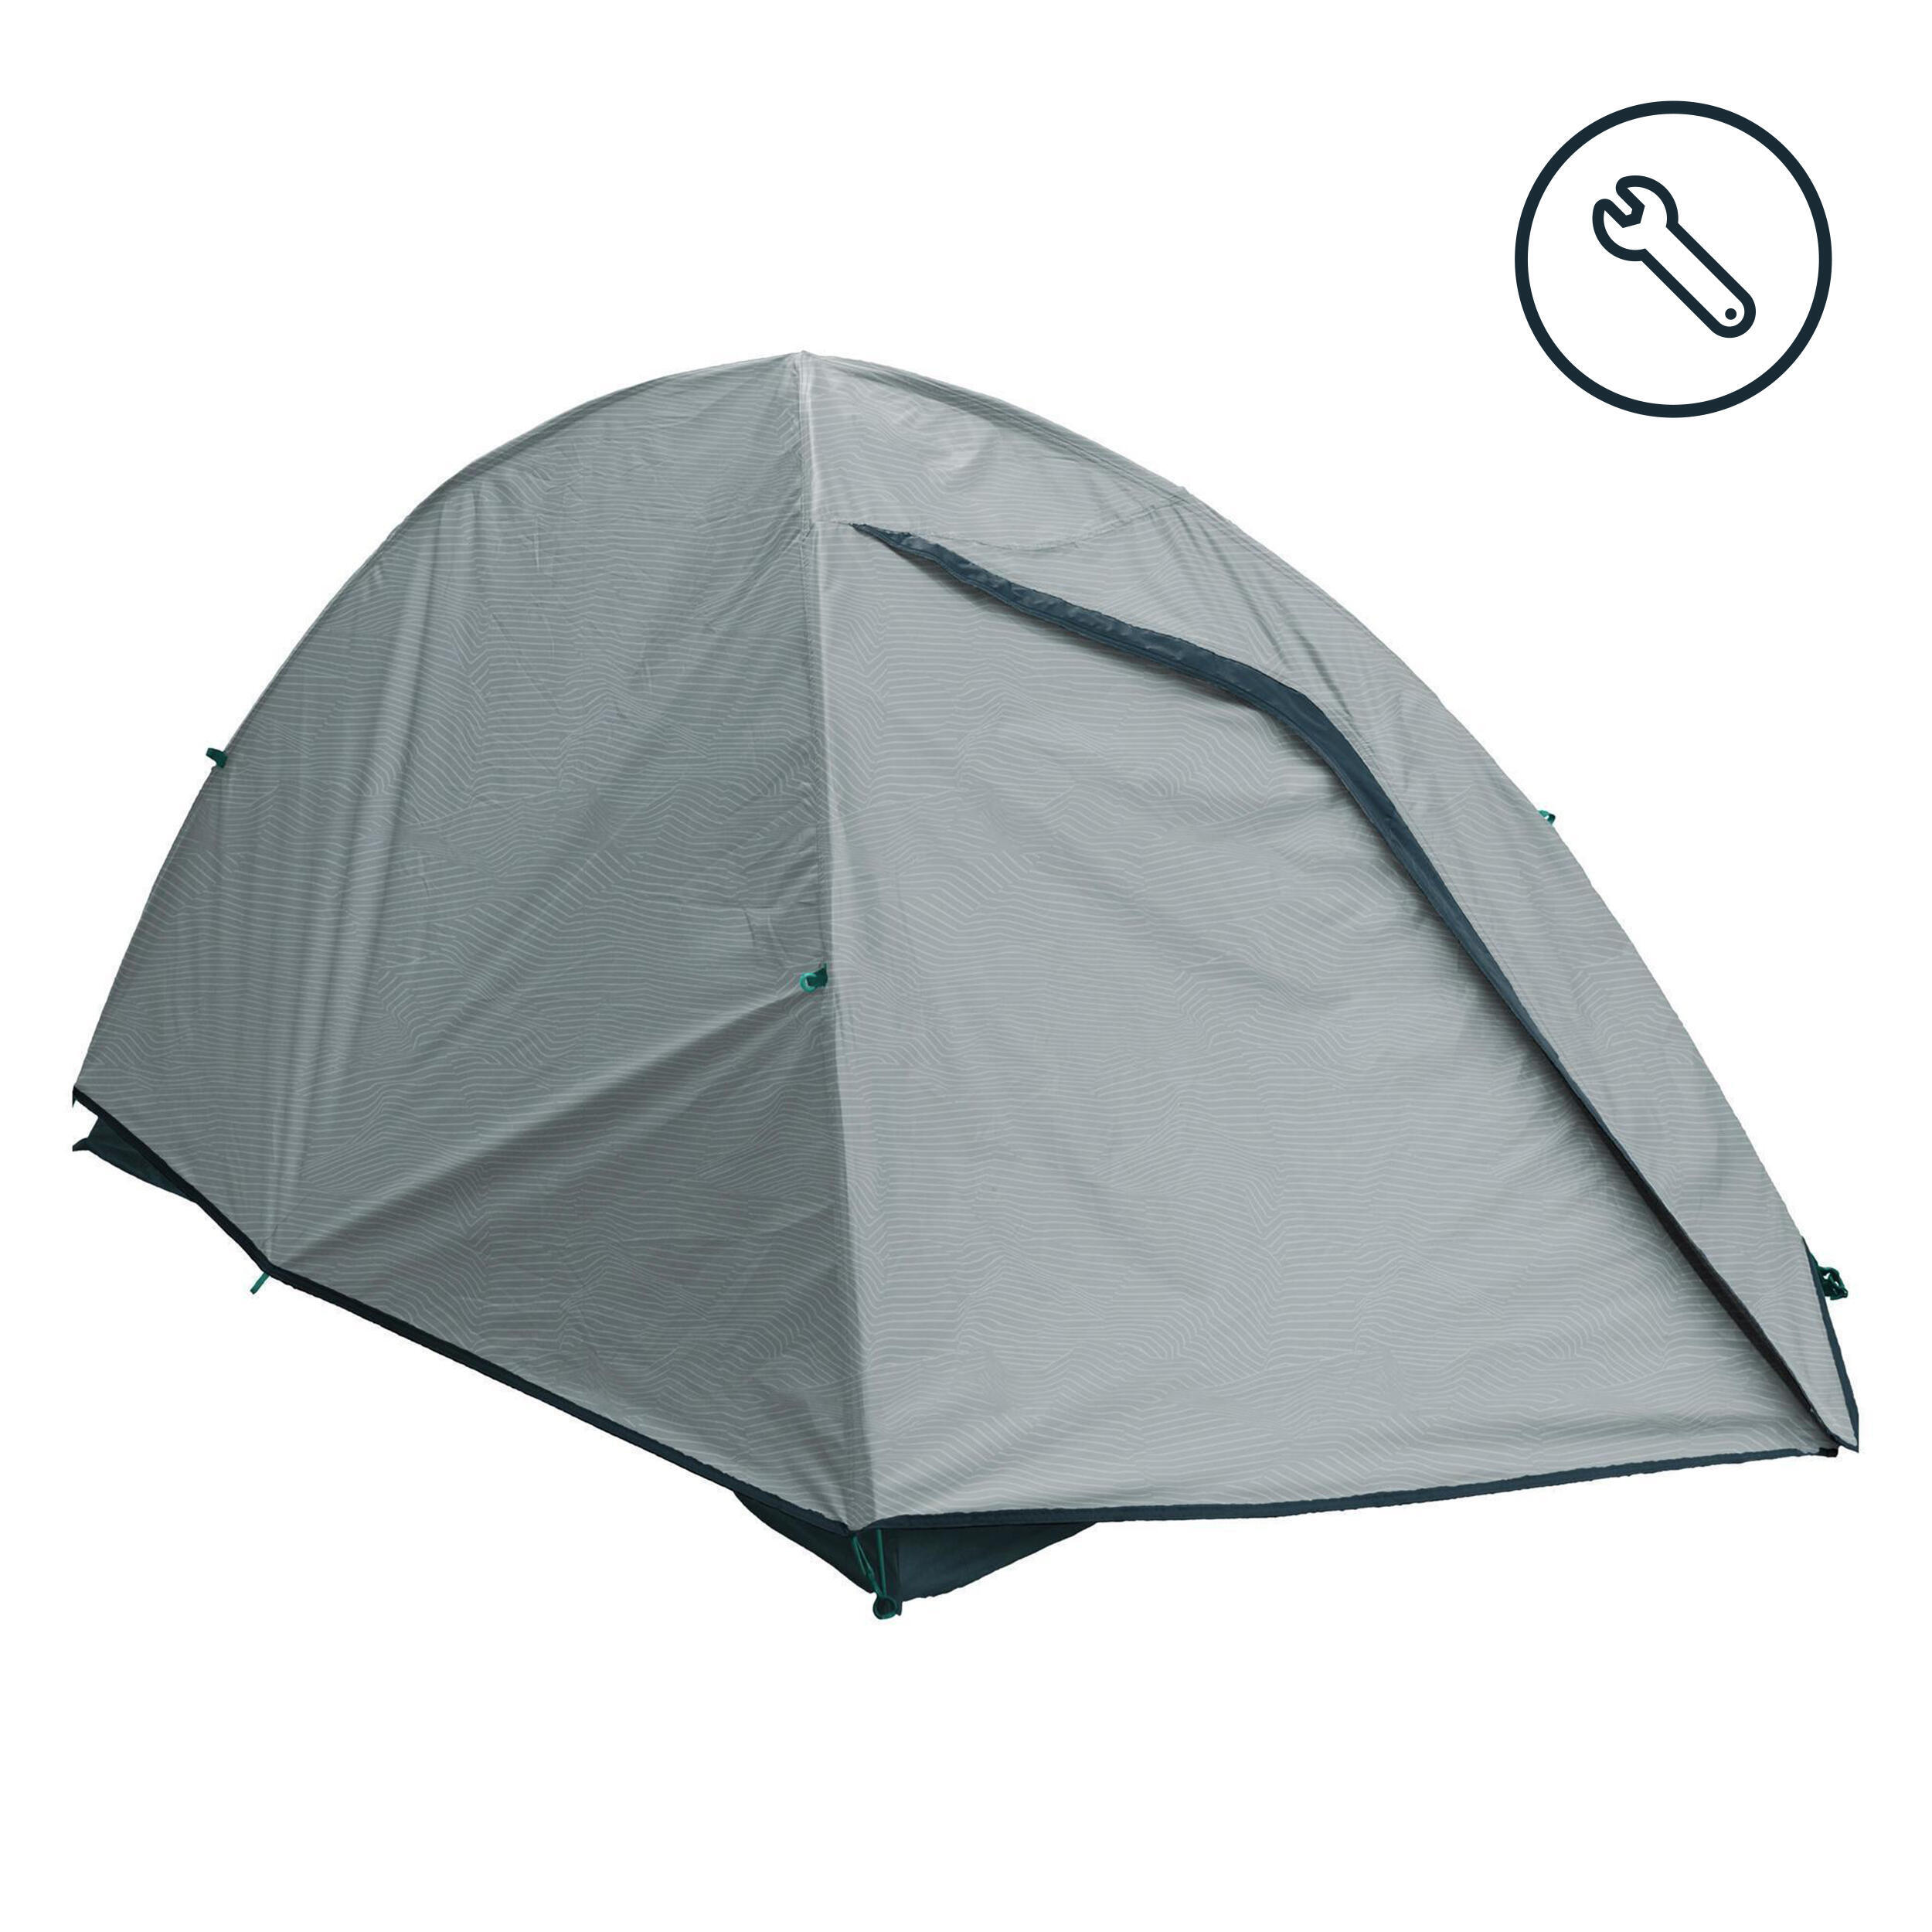 тент для палатки торговой 3х2м палатка торговая тент Тент Quechua MH100 запчасть для палатки, на 2 человека